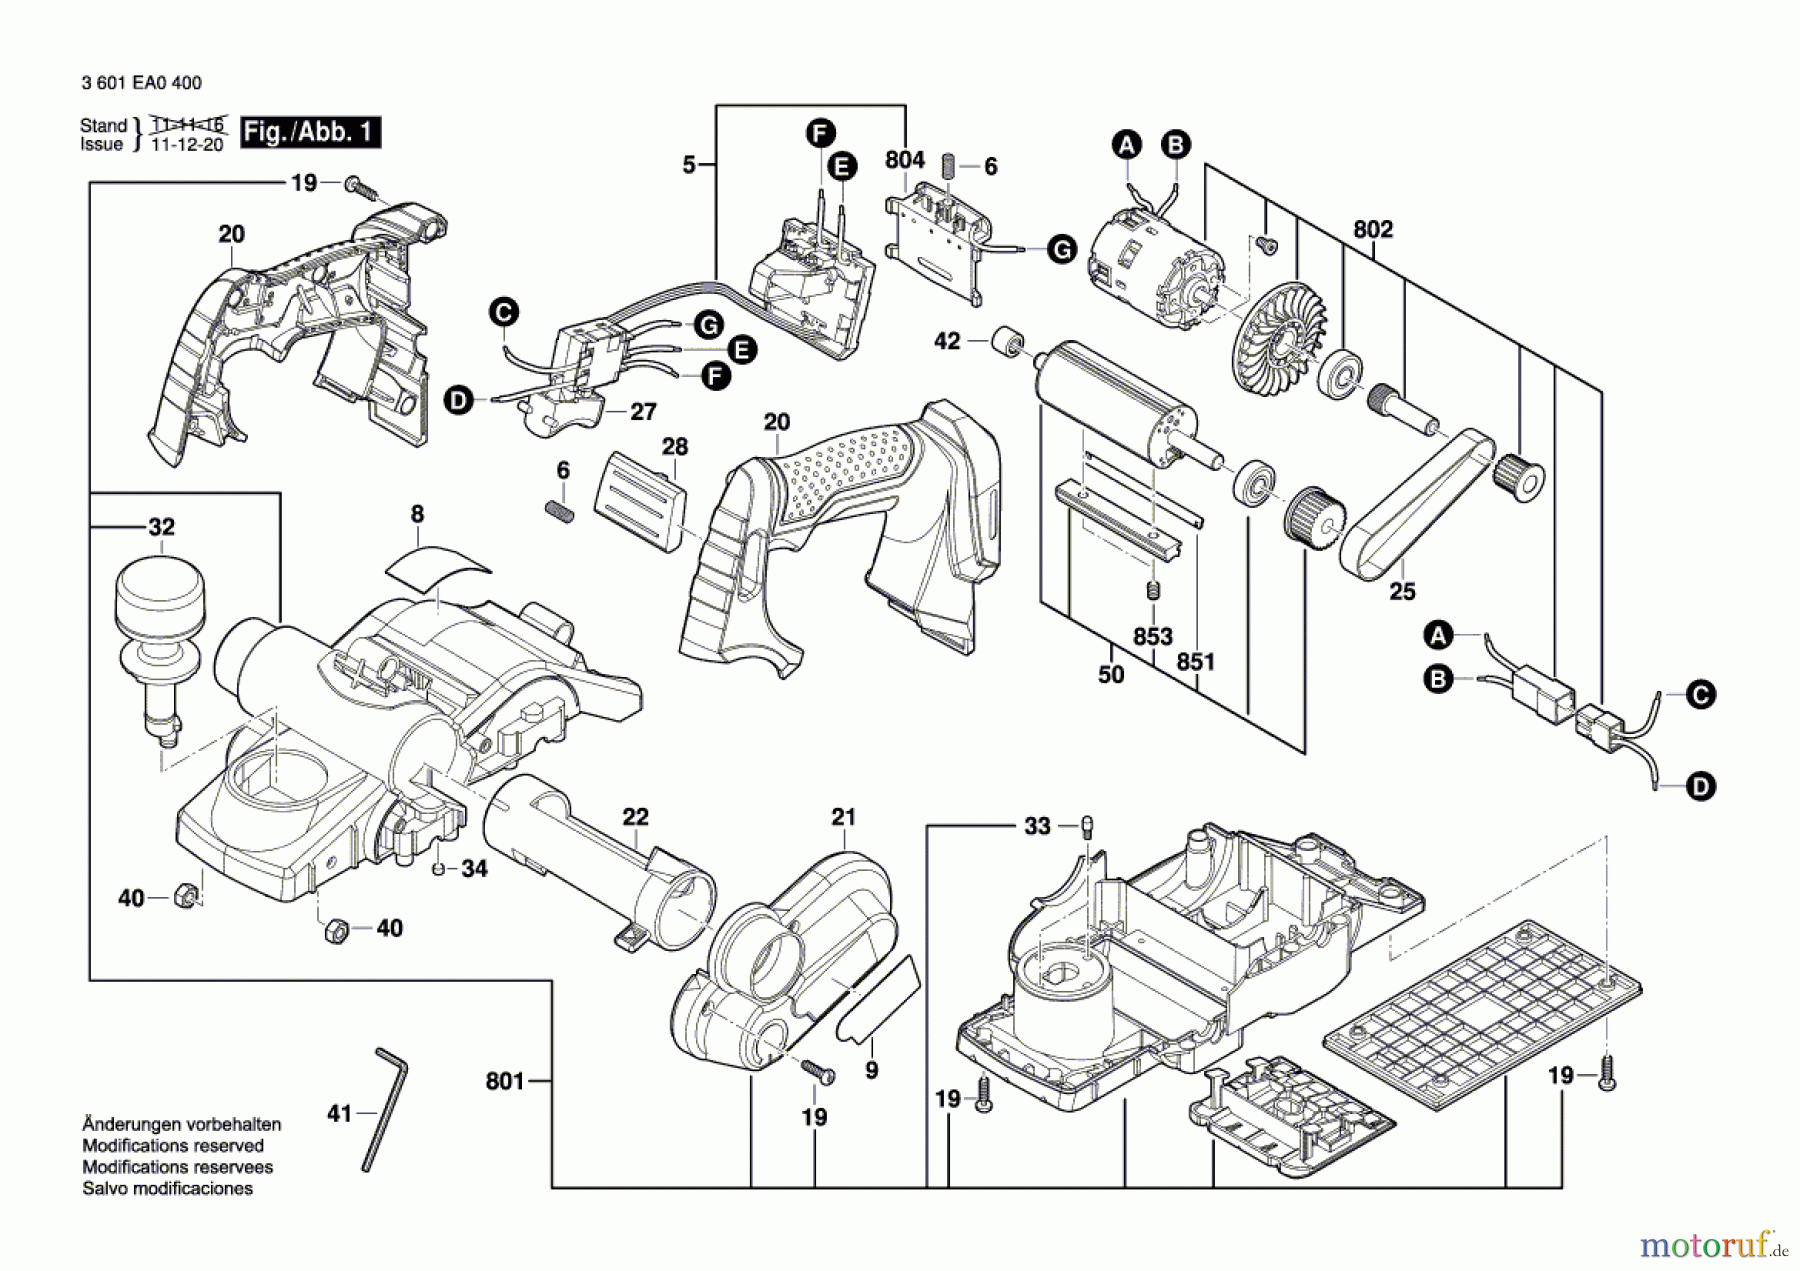  Bosch Werkzeug Handhobel GHO 14,4 V-LI Seite 1